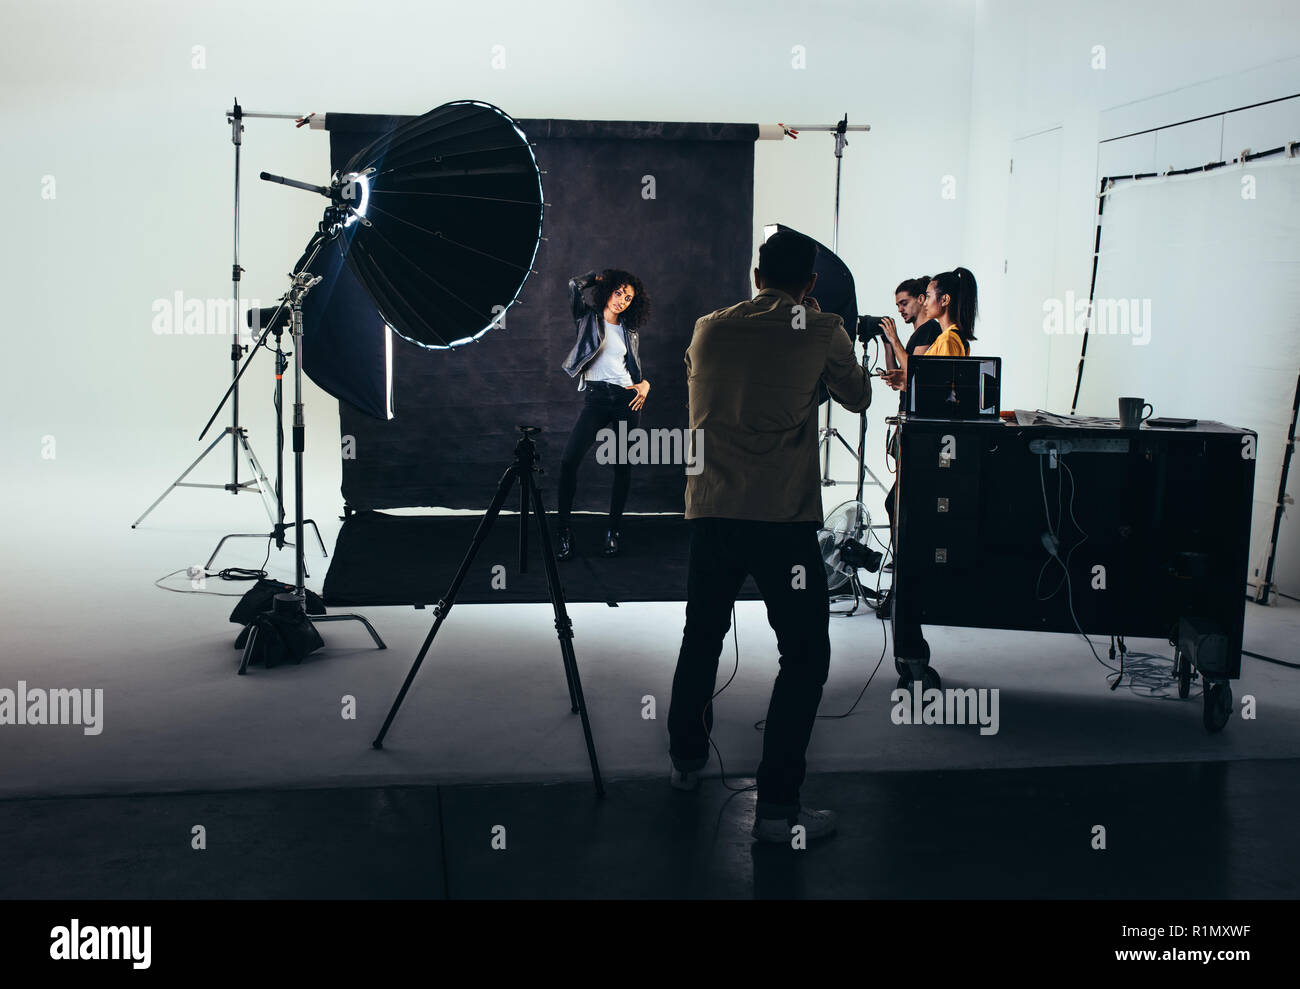 Photos de tournage photographe un modèle féminin avec flash studio lumières sur. Photographe avec son équipe pendant une séance photo. Banque D'Images